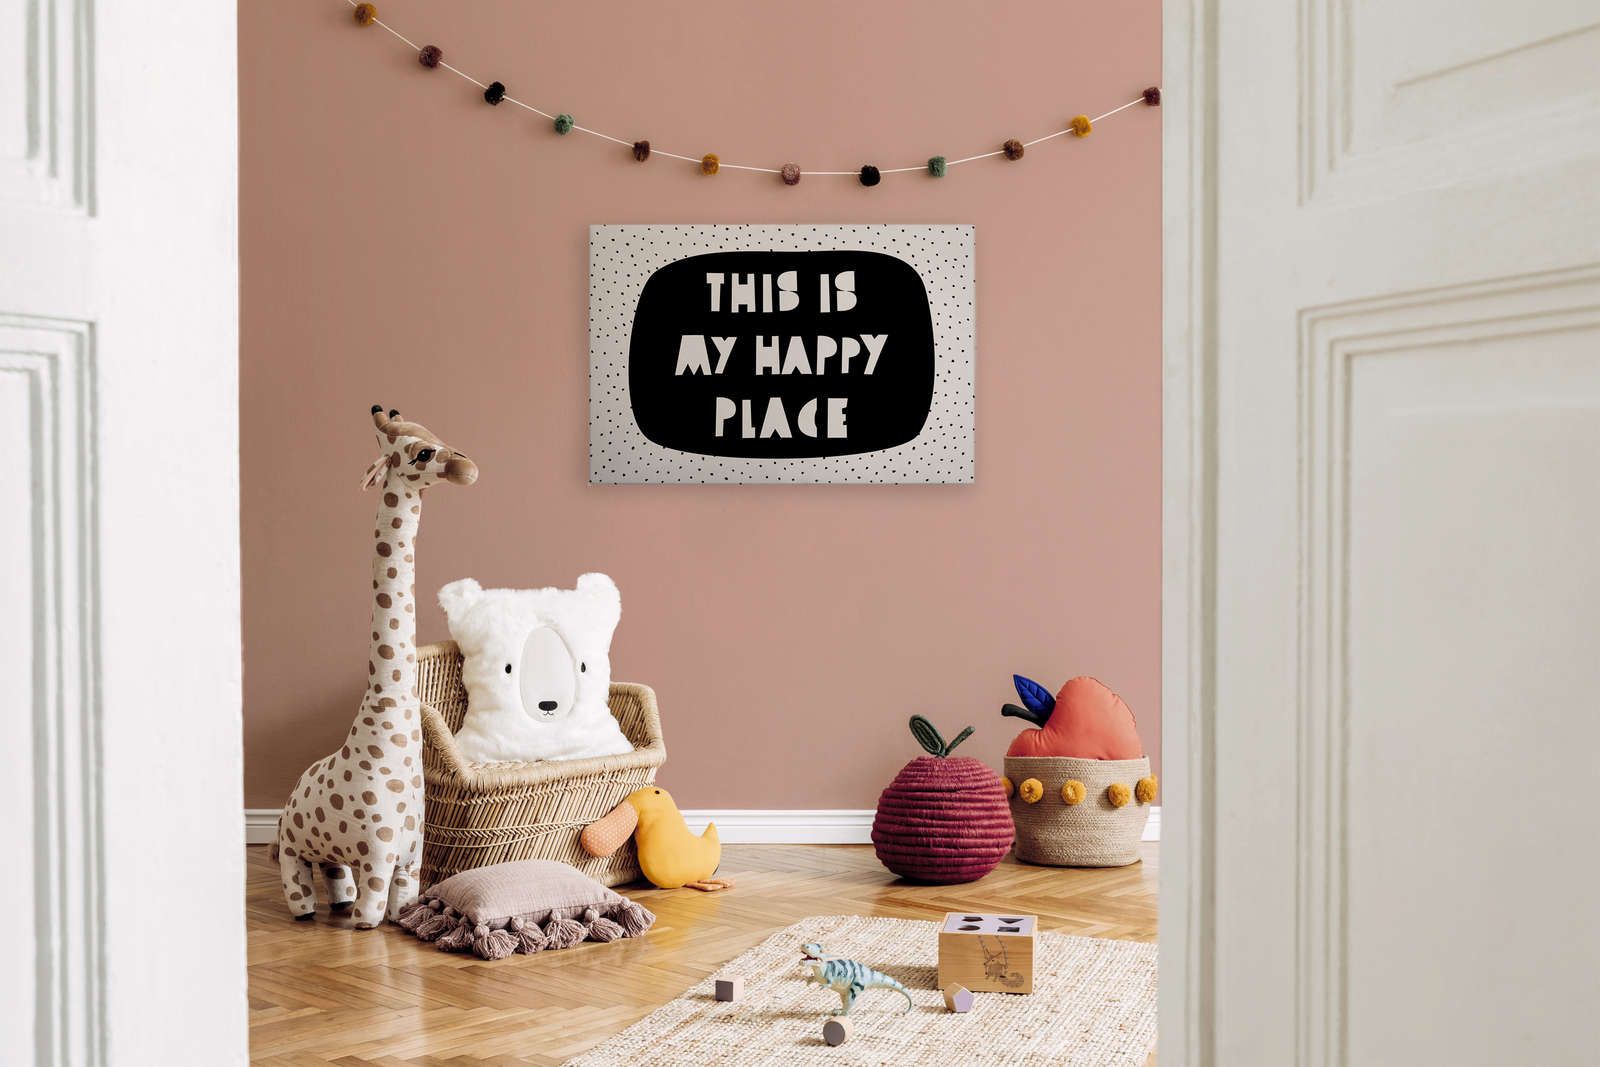             Tela per la camera dei bambini con scritta "Questo è il mio posto felice" - 90 cm x 60 cm
        